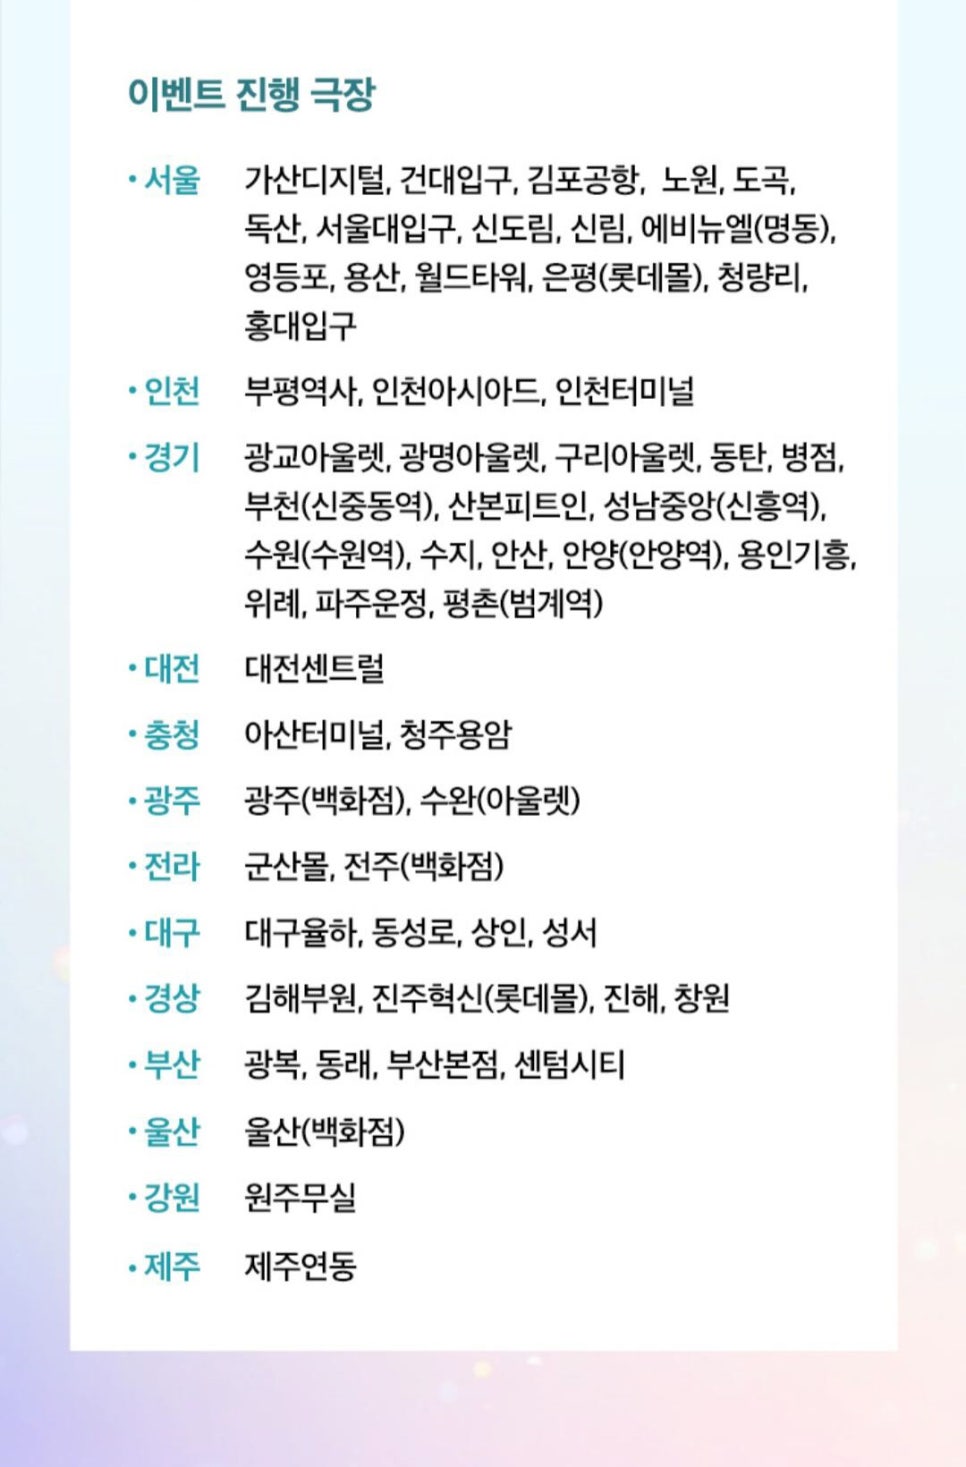 김태용 영화 원더랜드 1주차 특전 CGV TTT 실물 롯데 아트카드 메가박스 굿즈 패키지 개봉일 증정